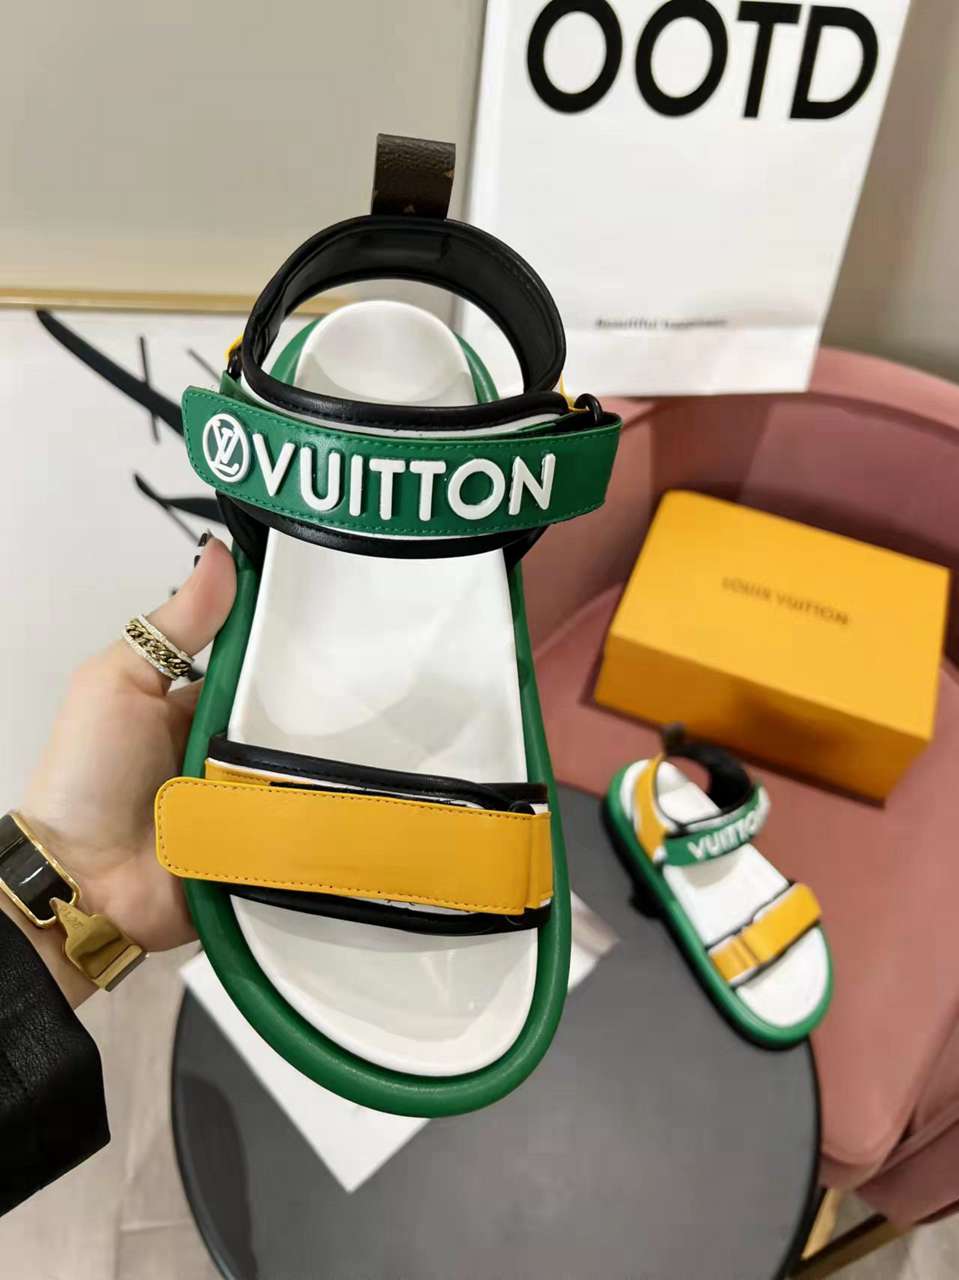 Louis Vuitton Velcro Strap Sandals  in 259147, cheap Louis Vuitton Sandal, only $82!